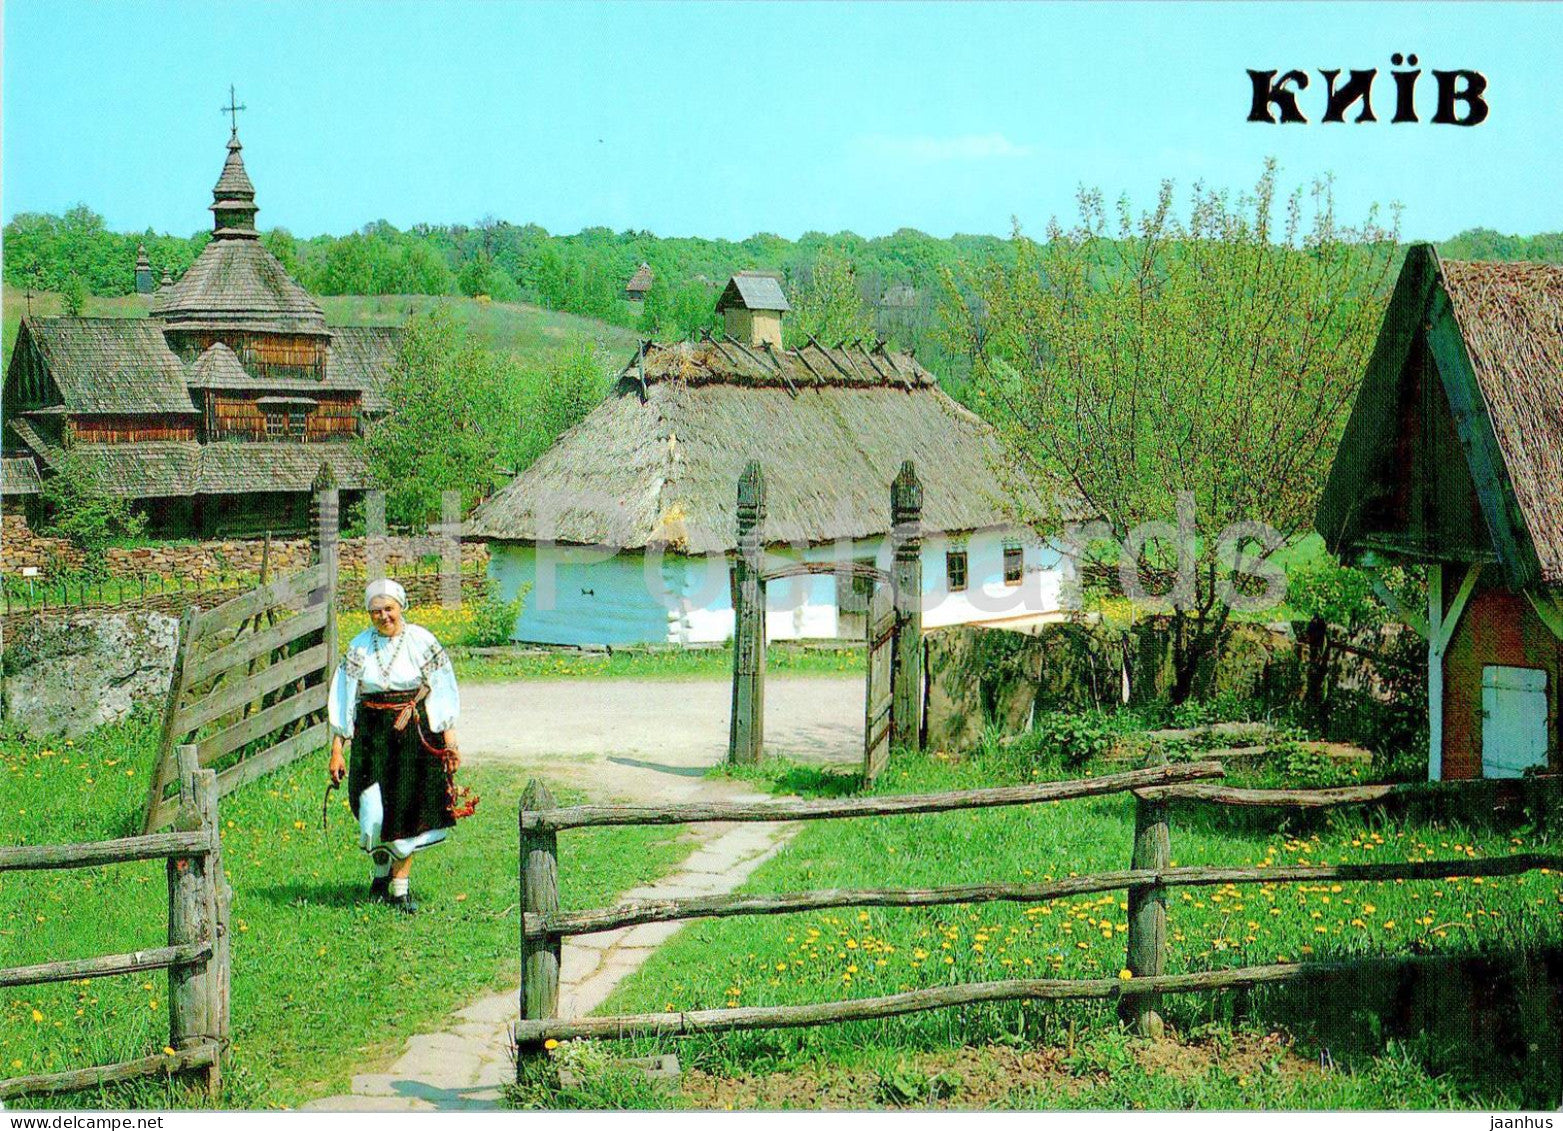 Kyiv - Kiev - Ukrainian Folk Architecture and Household Museum - folk costume - 1990 - Ukraine USSR - unused - JH Postcards